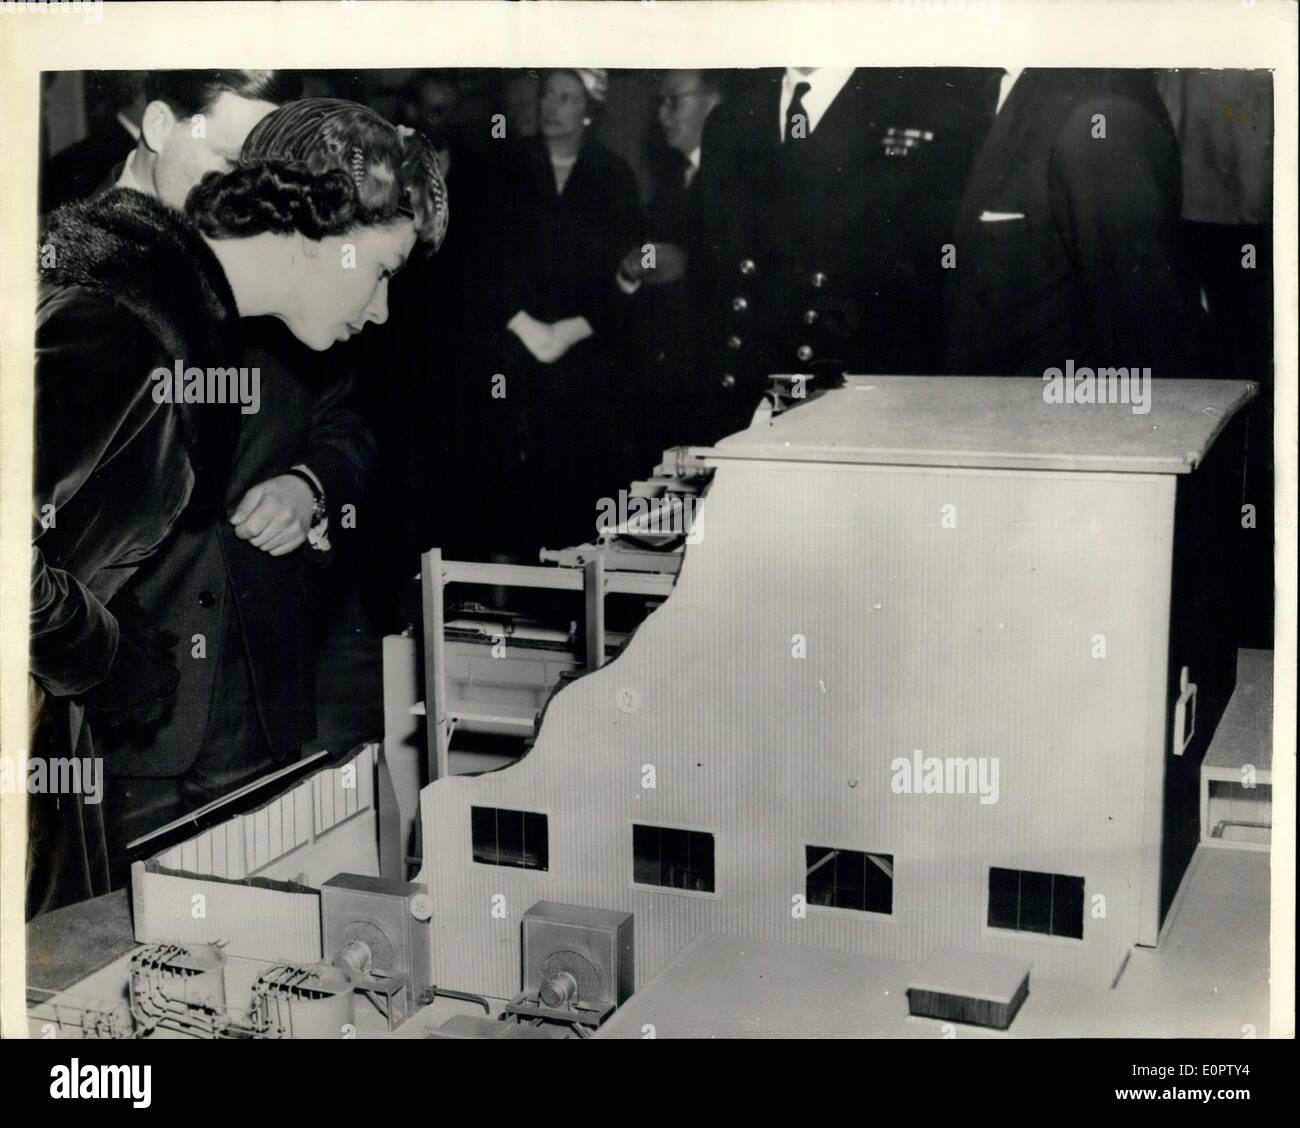 Mar 01, 1957 - H.M. La regina paga visita a Harwell... Il reattore di ricerca modello. H.M. La regina e il Duca di Edimburgo ha pagato una visita all'energia atomica di attività di ricerca Stabilimento di Harwell, Herks, oggi dove hanno visto i più recenti sviluppi nella ricerca da parte di scienziati inglesi nell'applicazione industriale del nucleare. Keystone Foto Mostra:- H.M. La regina appare in un modello di sito del reattore di ricerca Lido durante la visita di Harwell oggi. Foto Stock